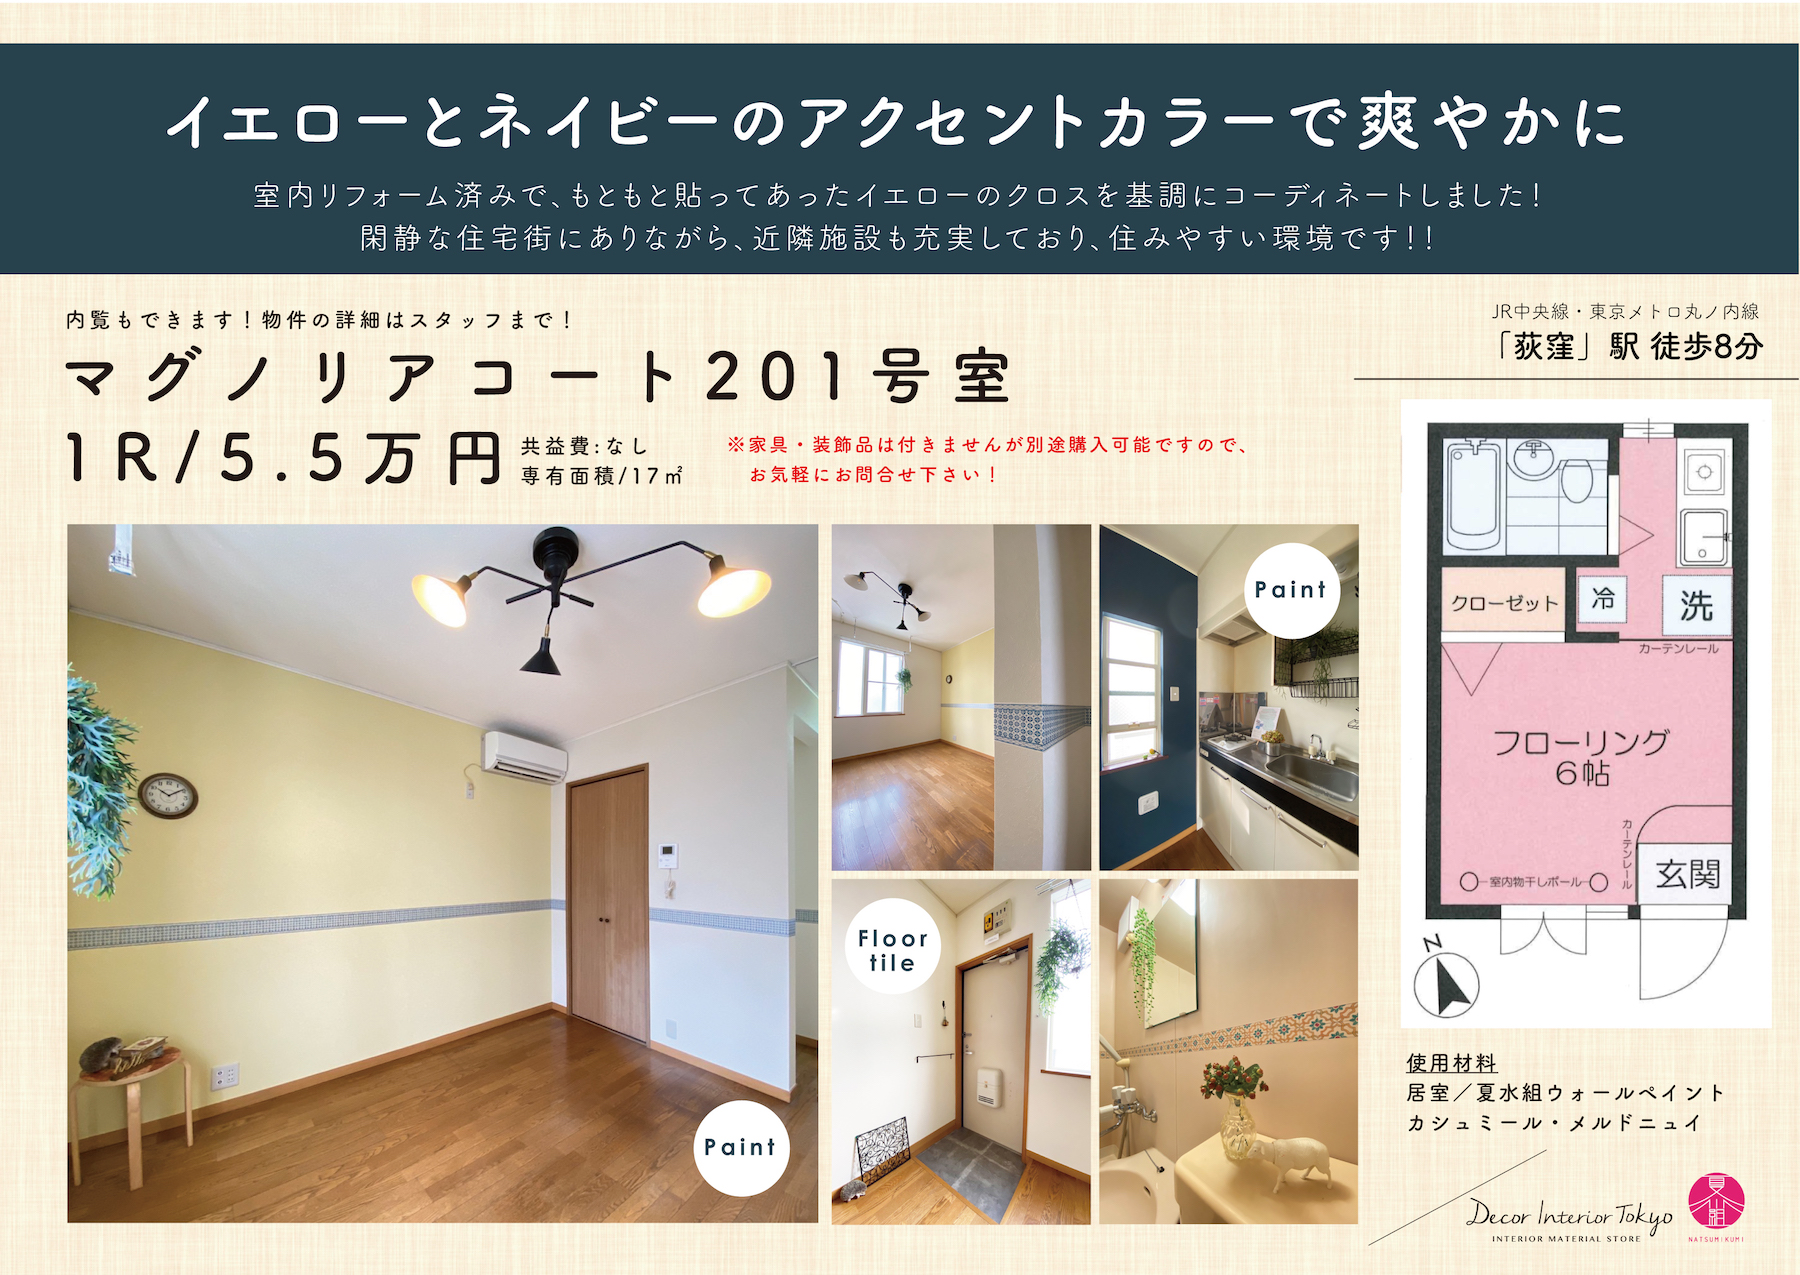 【随時更新】Decor Interior TokyoがプロデュースするDIY賃貸の物件と材料一覧・Vol.2